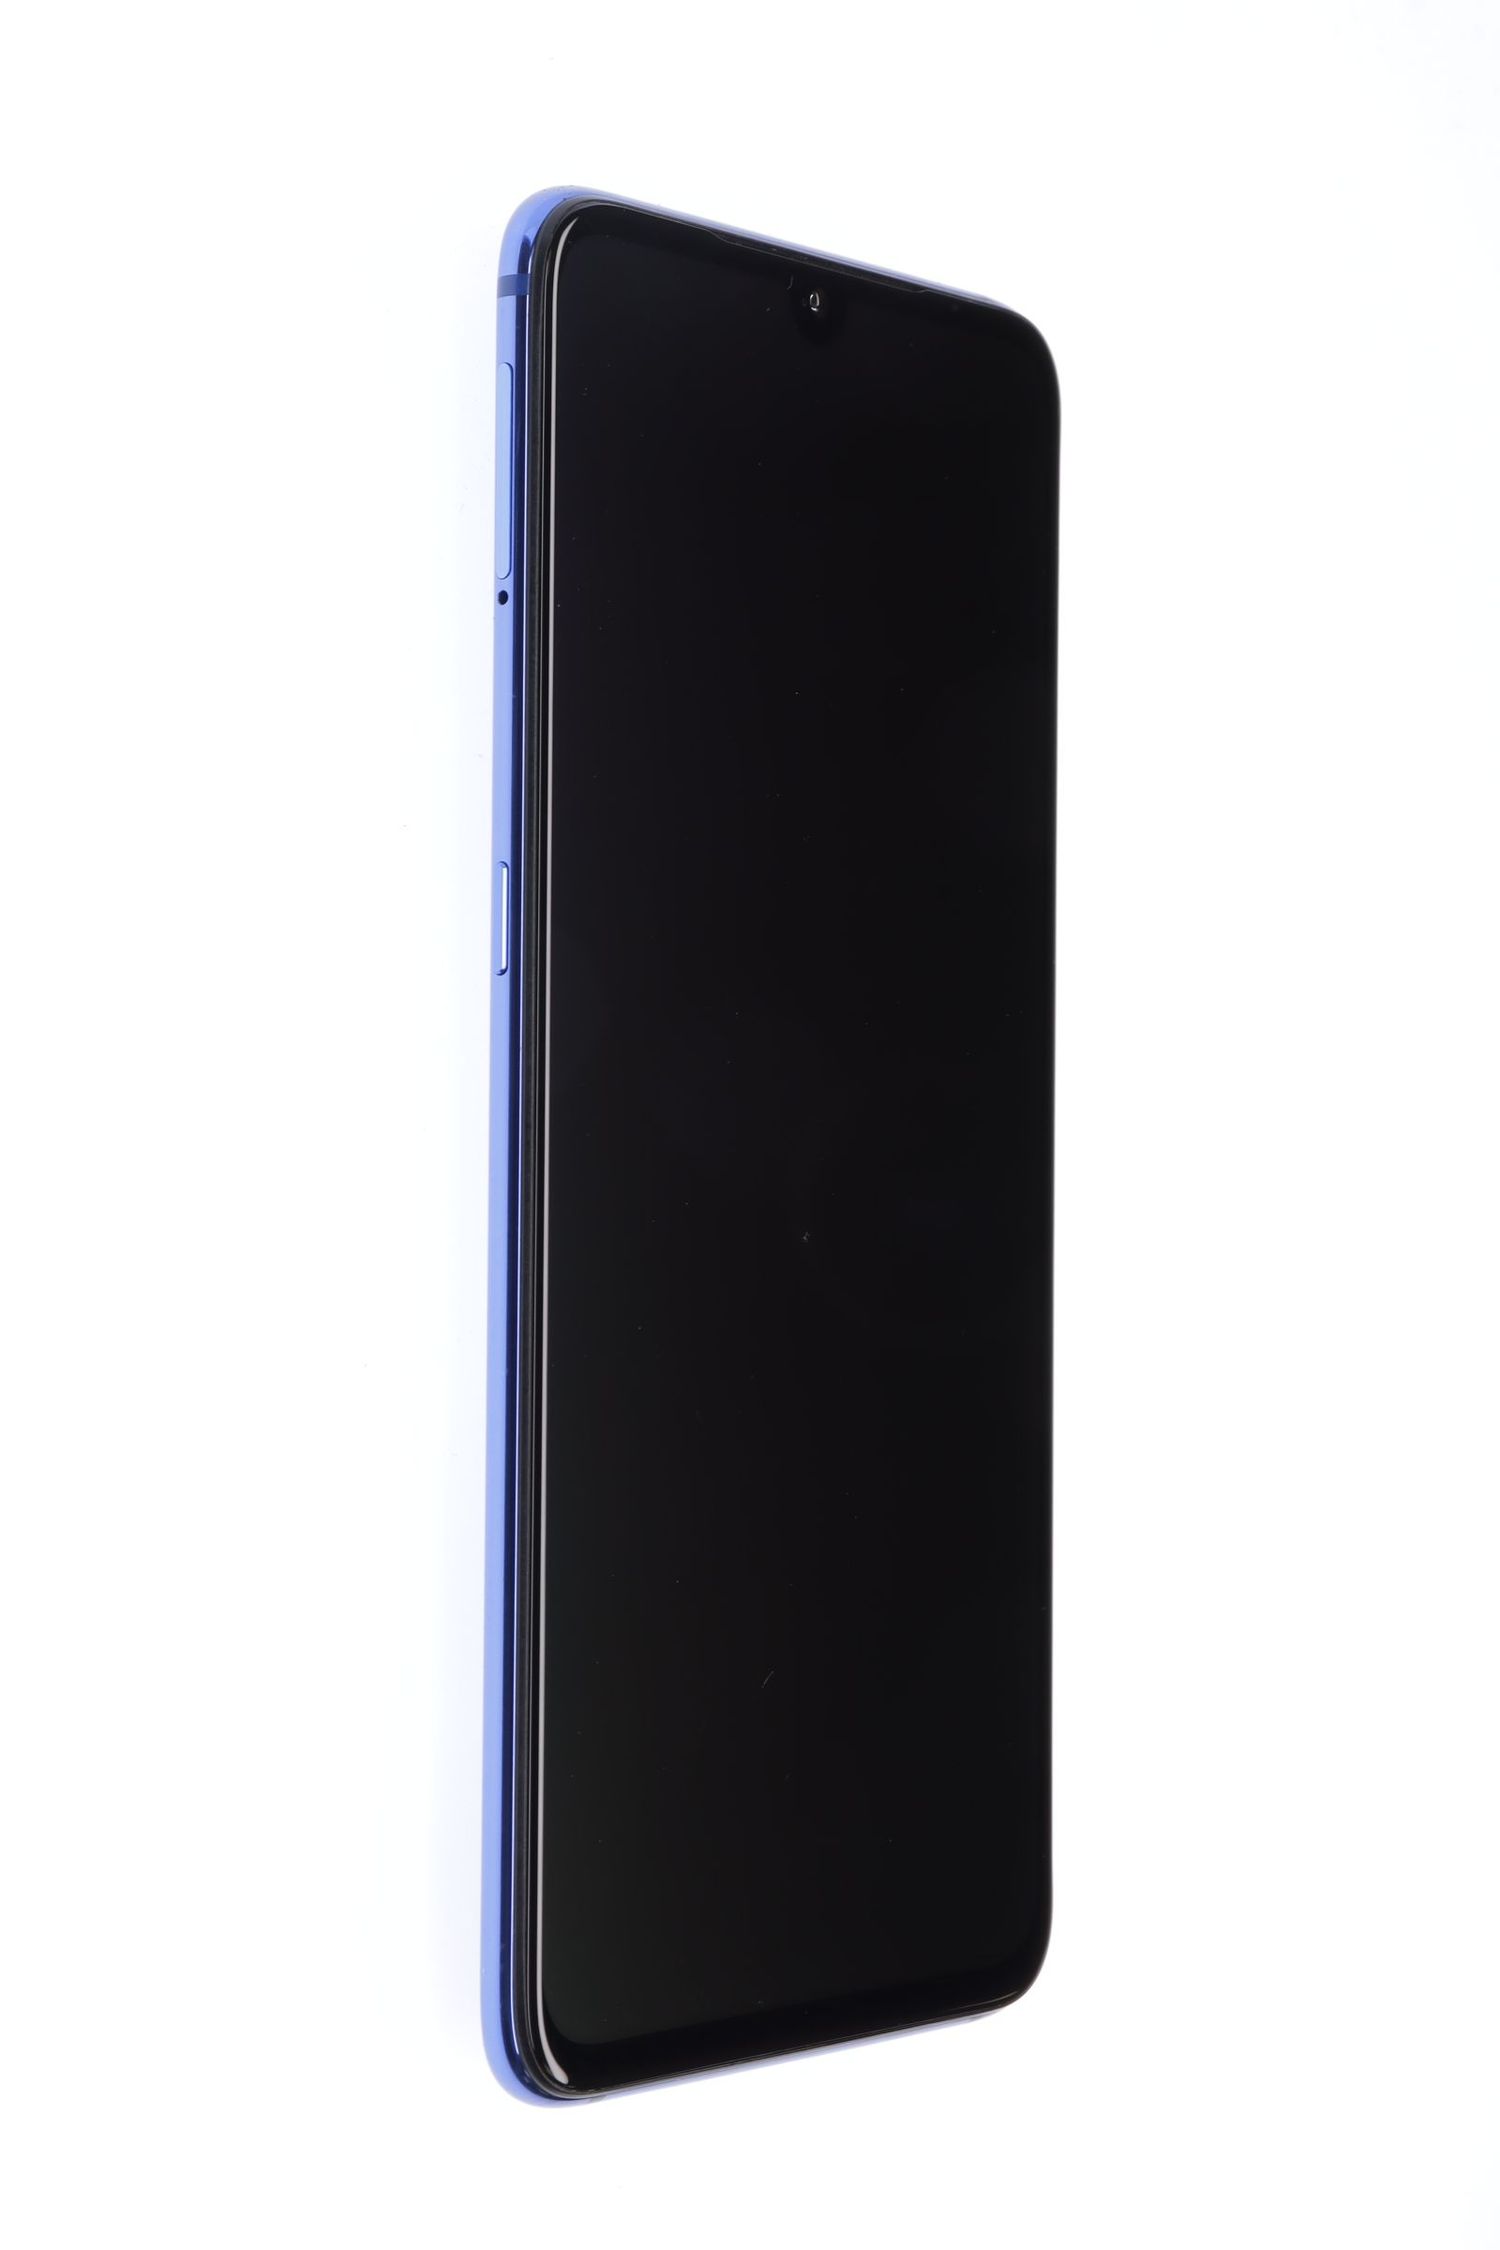 Mobiltelefon Xiaomi Mi 9, Ocean Blue, 128 GB, Excelent